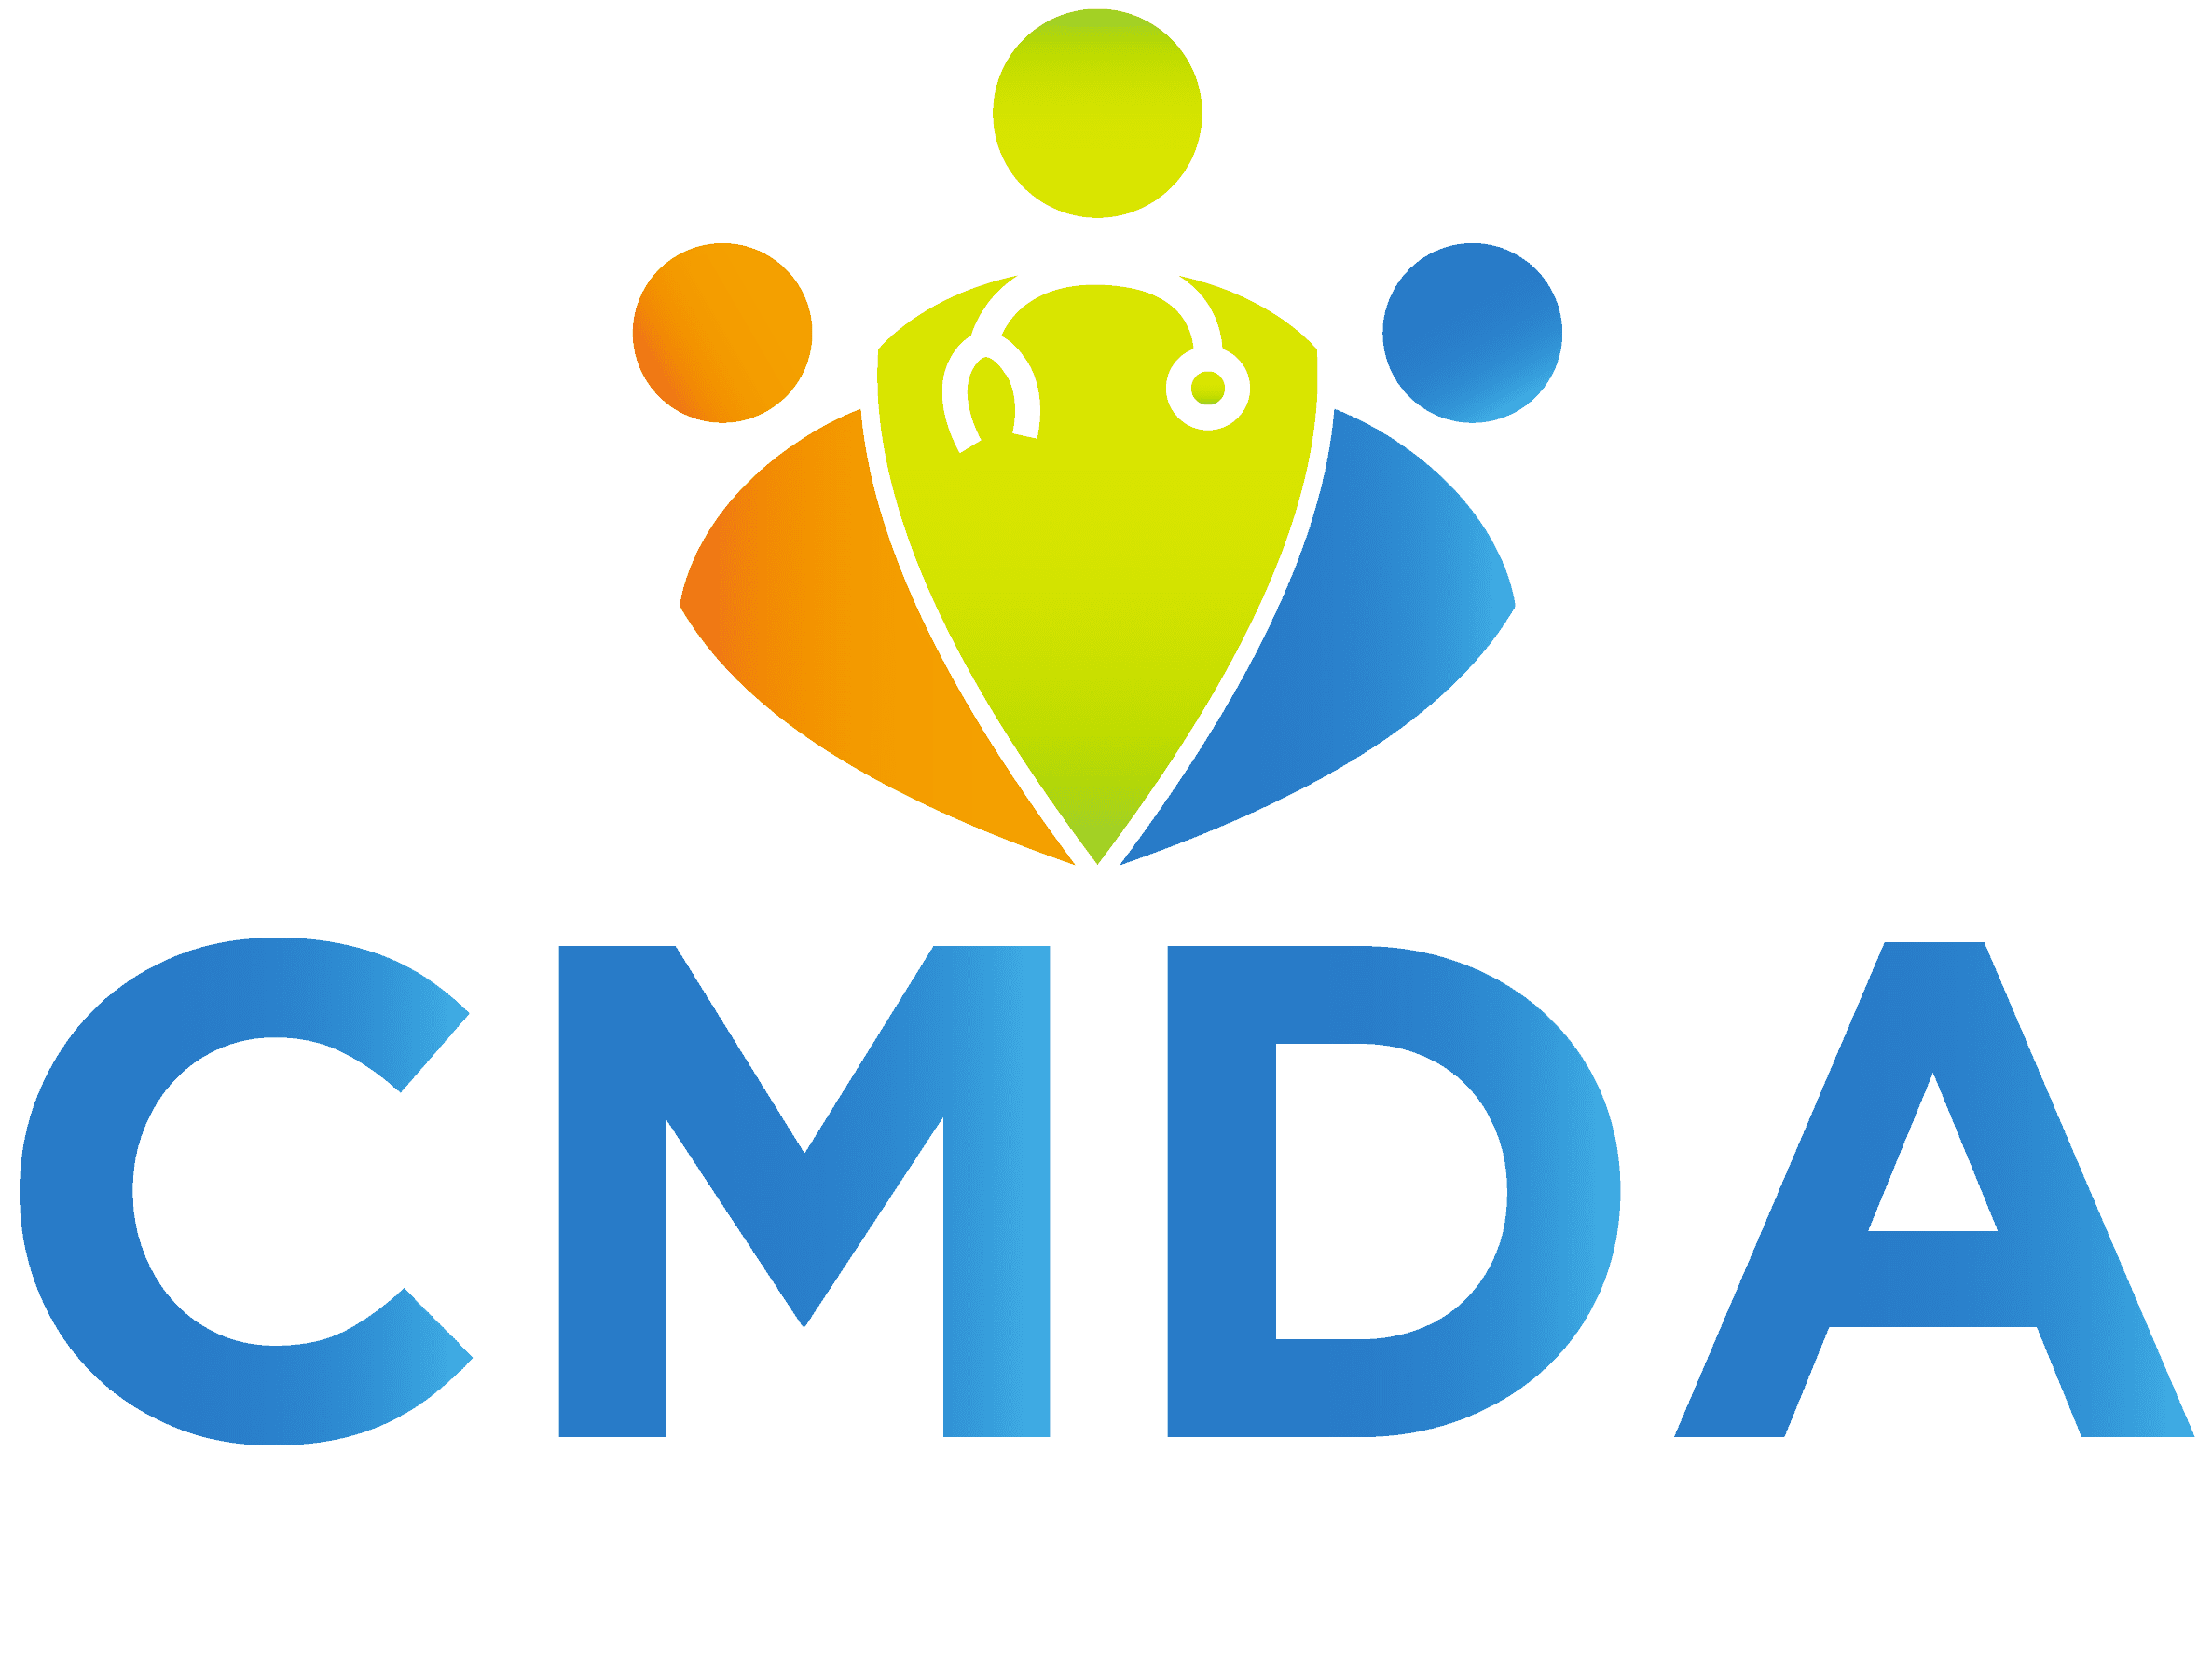 studentlife-logo-white-letter